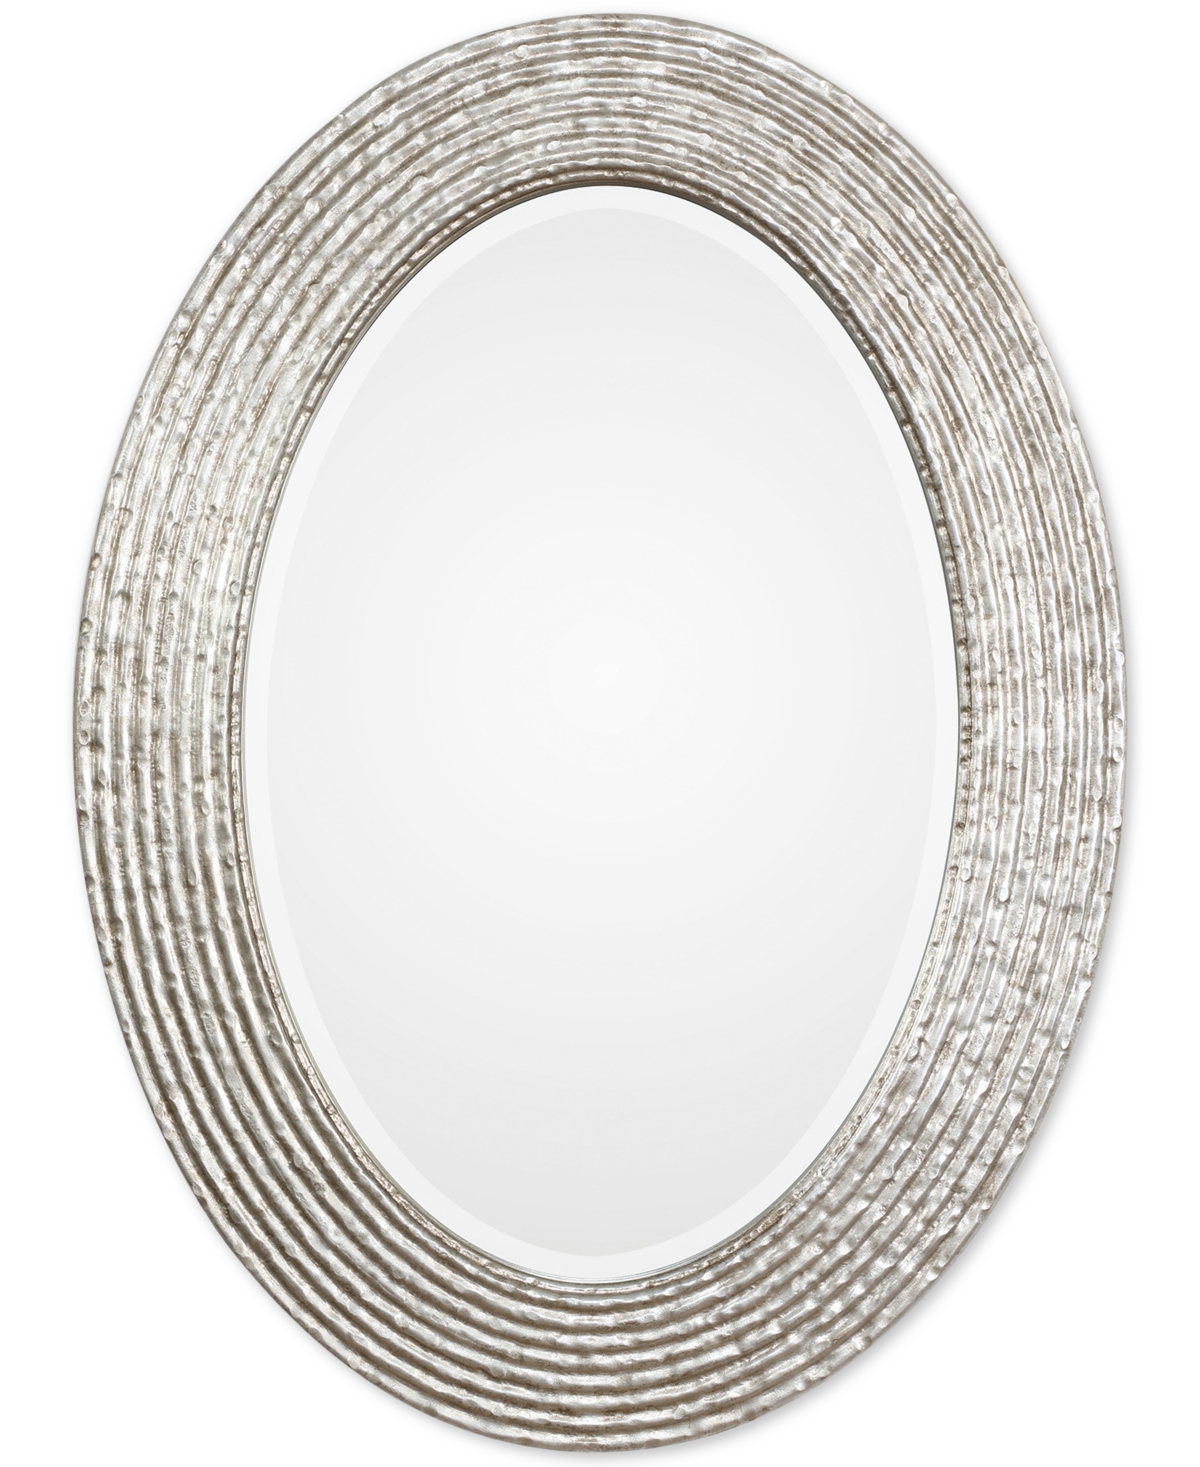 Conder Oval Silver Mirror